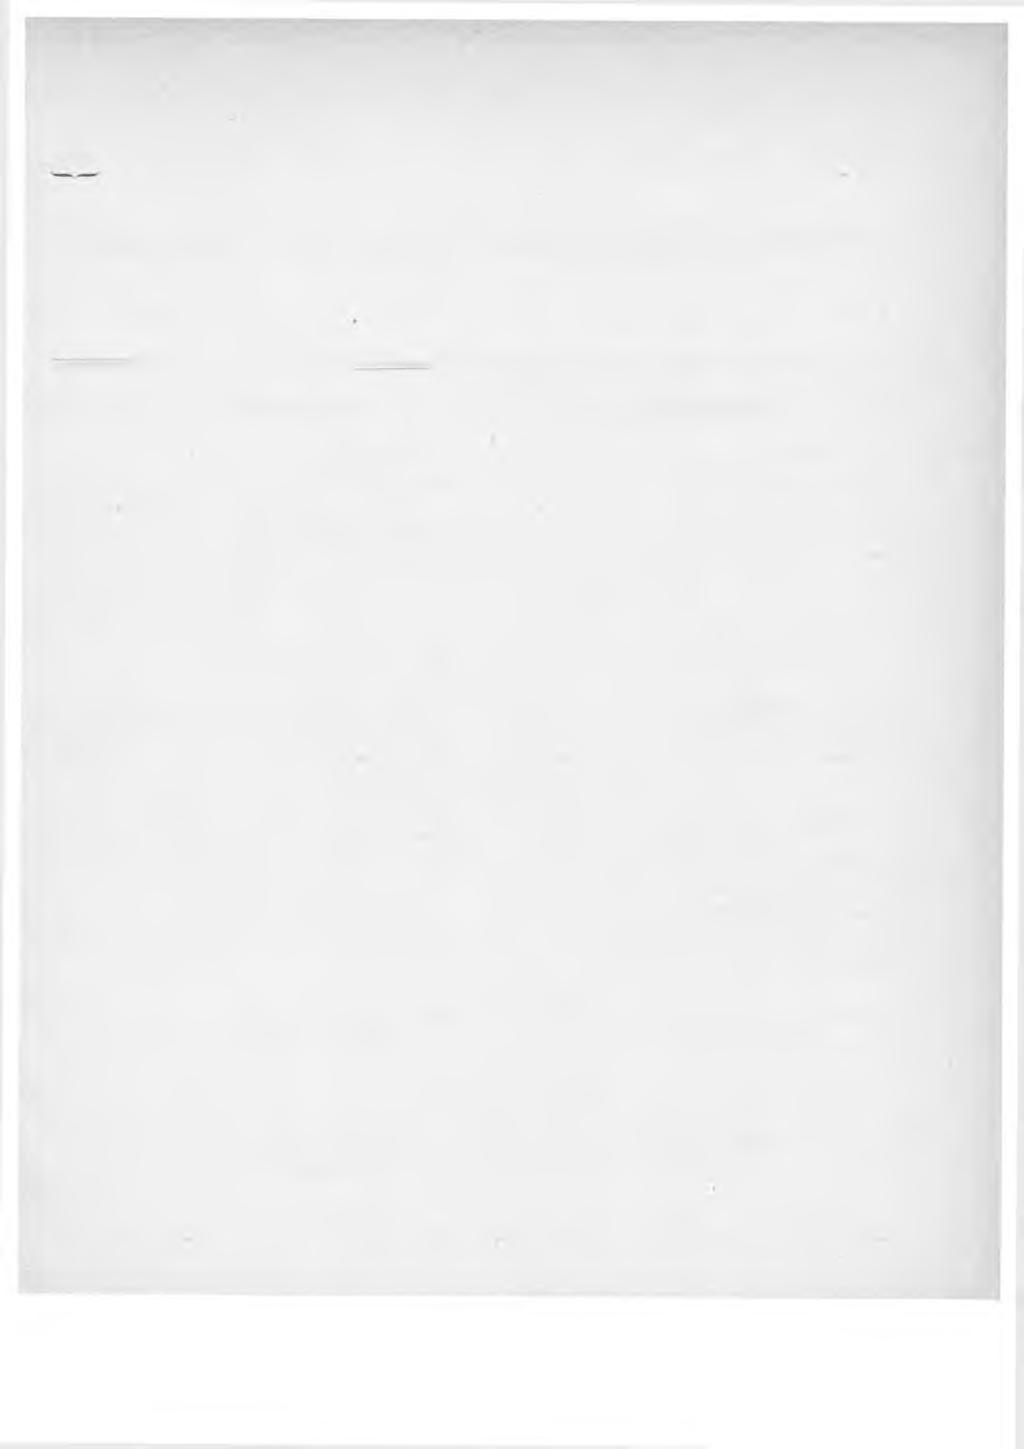 1900 B ih an g Liite N0 11 tili poststyrelsens i finland cirkulär för Suomen postihallituksen kiertokirjeisiin ISToTT-em loer na.å,m.a.cl. IvCar rasl^xa. Taita,. Personalförändringar.